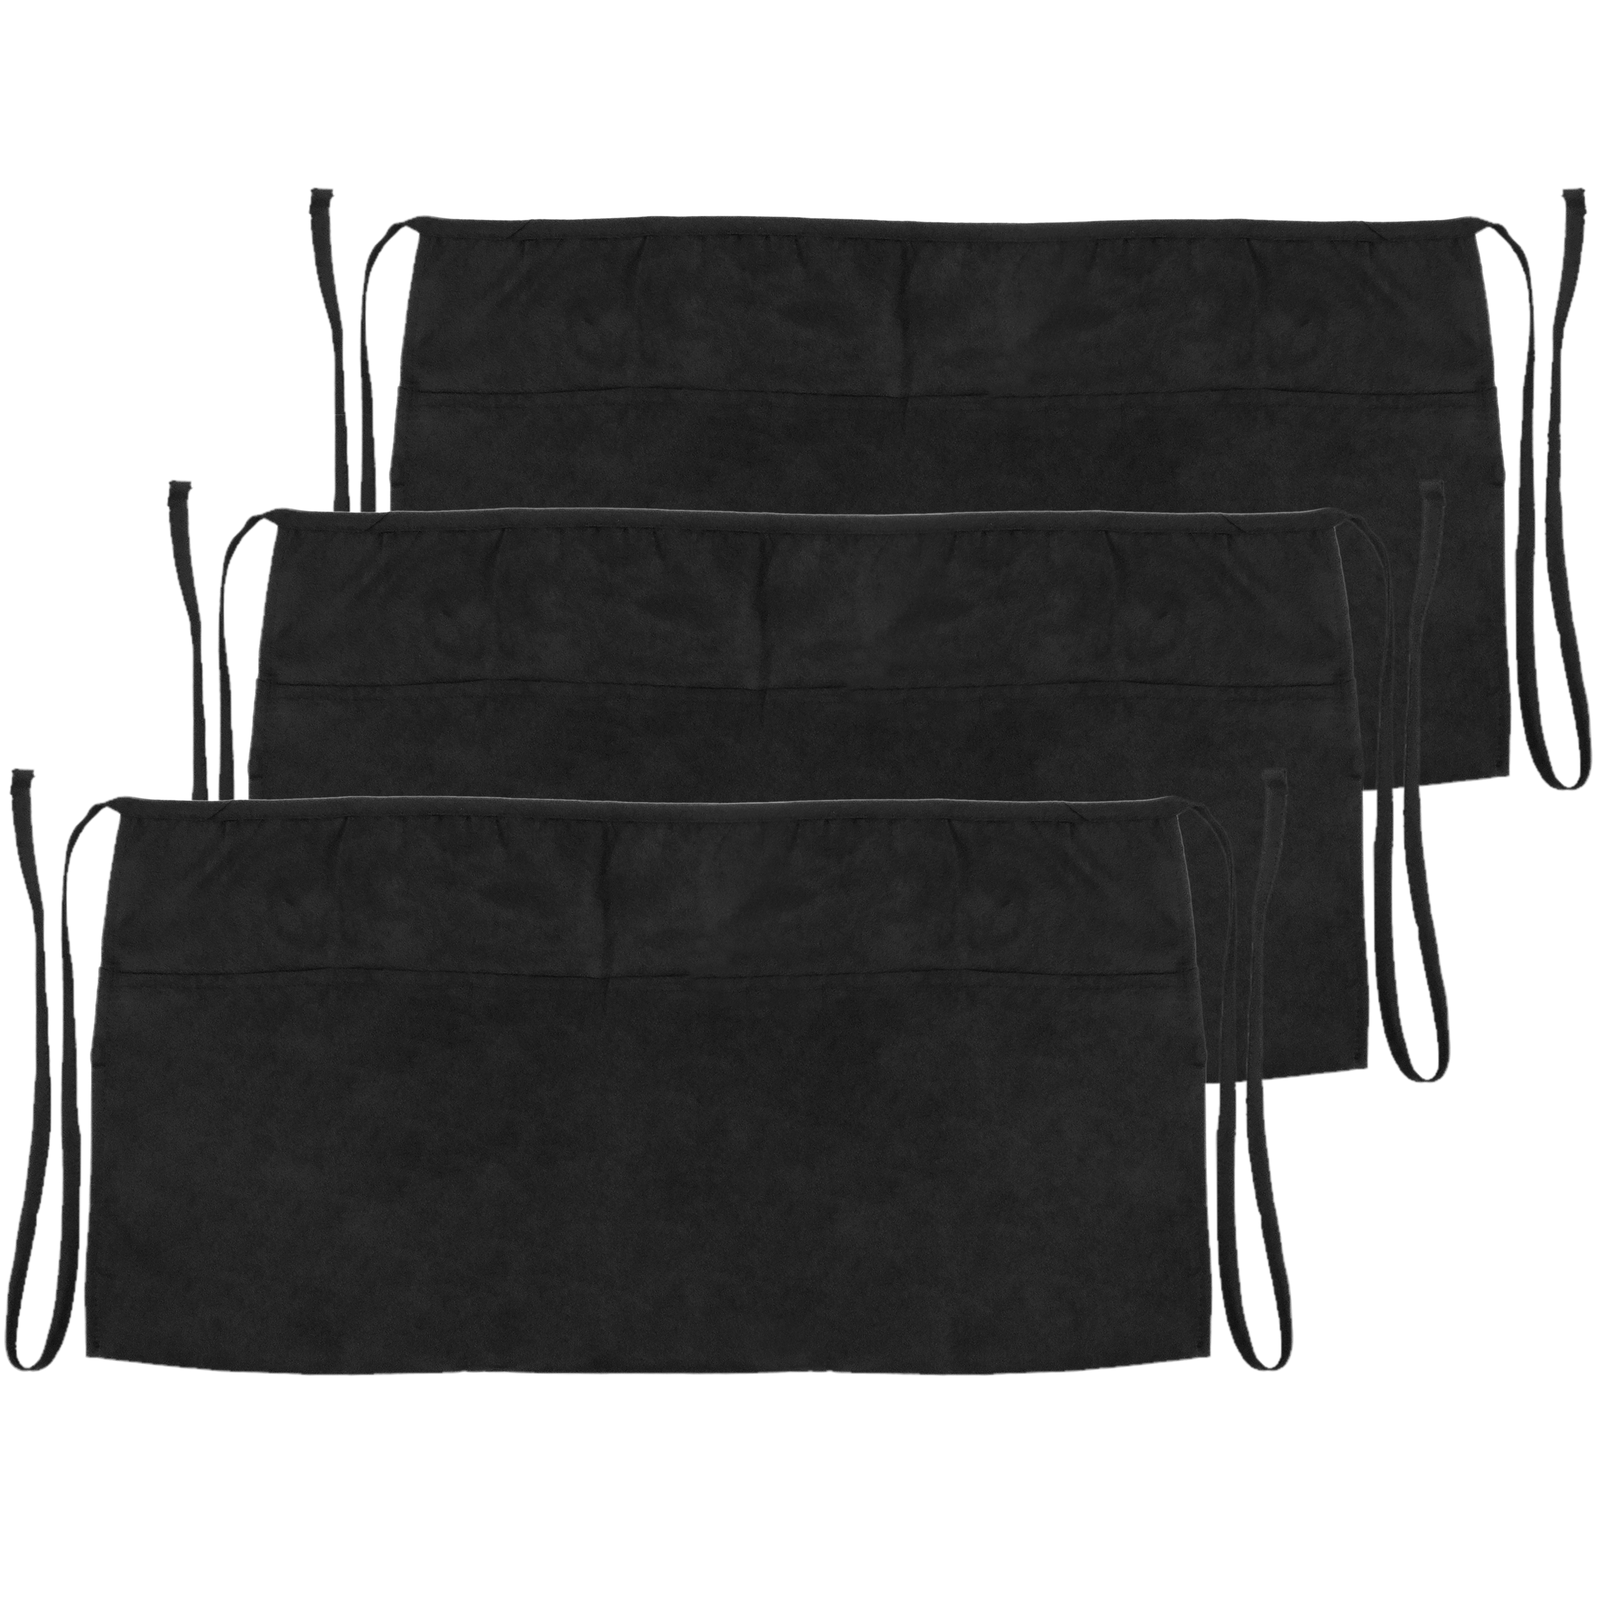  Delantal de cintura negro con clip con 3 bolsillos (21 x 12  pulgadas) delantal de servidor. Delantal de restaurante. Mesera, camarero,  cocina, hogar, Negro - : Hogar y Cocina